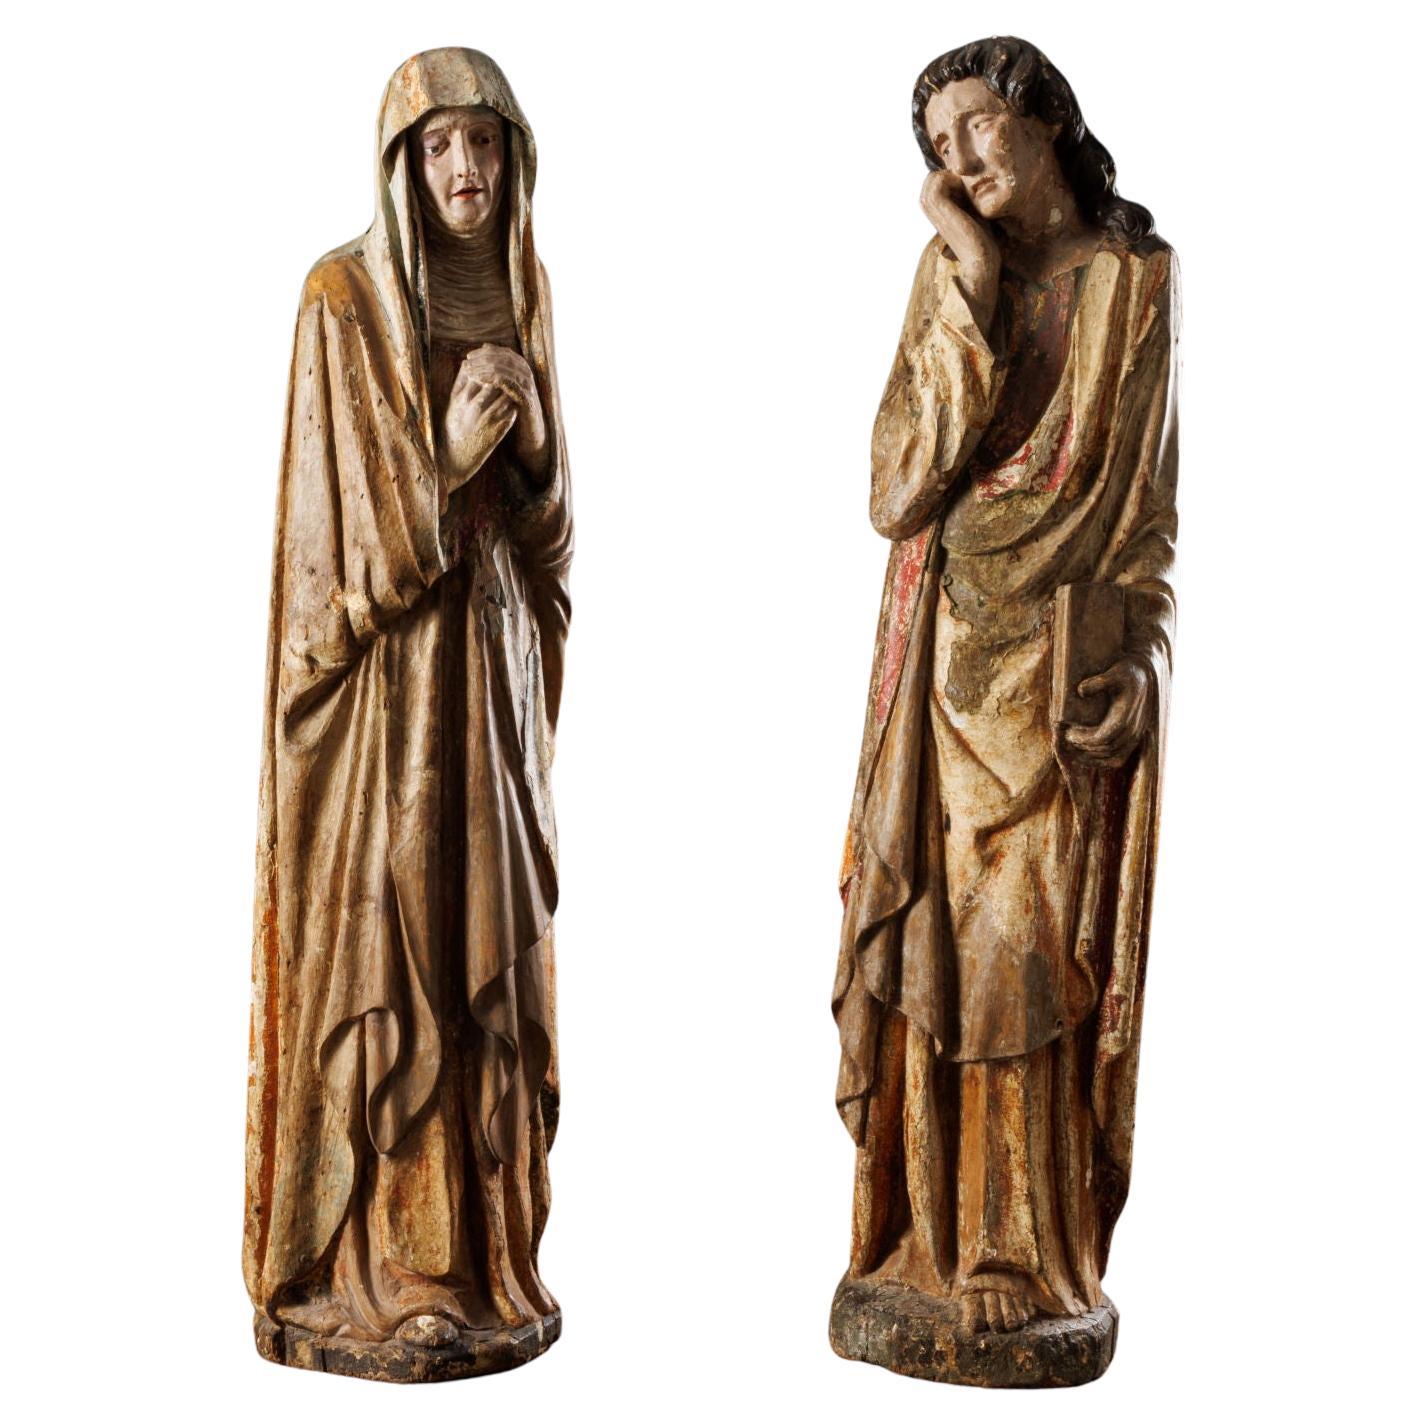 Dolenti (Die Jungfrau und der heilige Johannes der Evangelist). Piemontesischer Schnitzer. 1470s